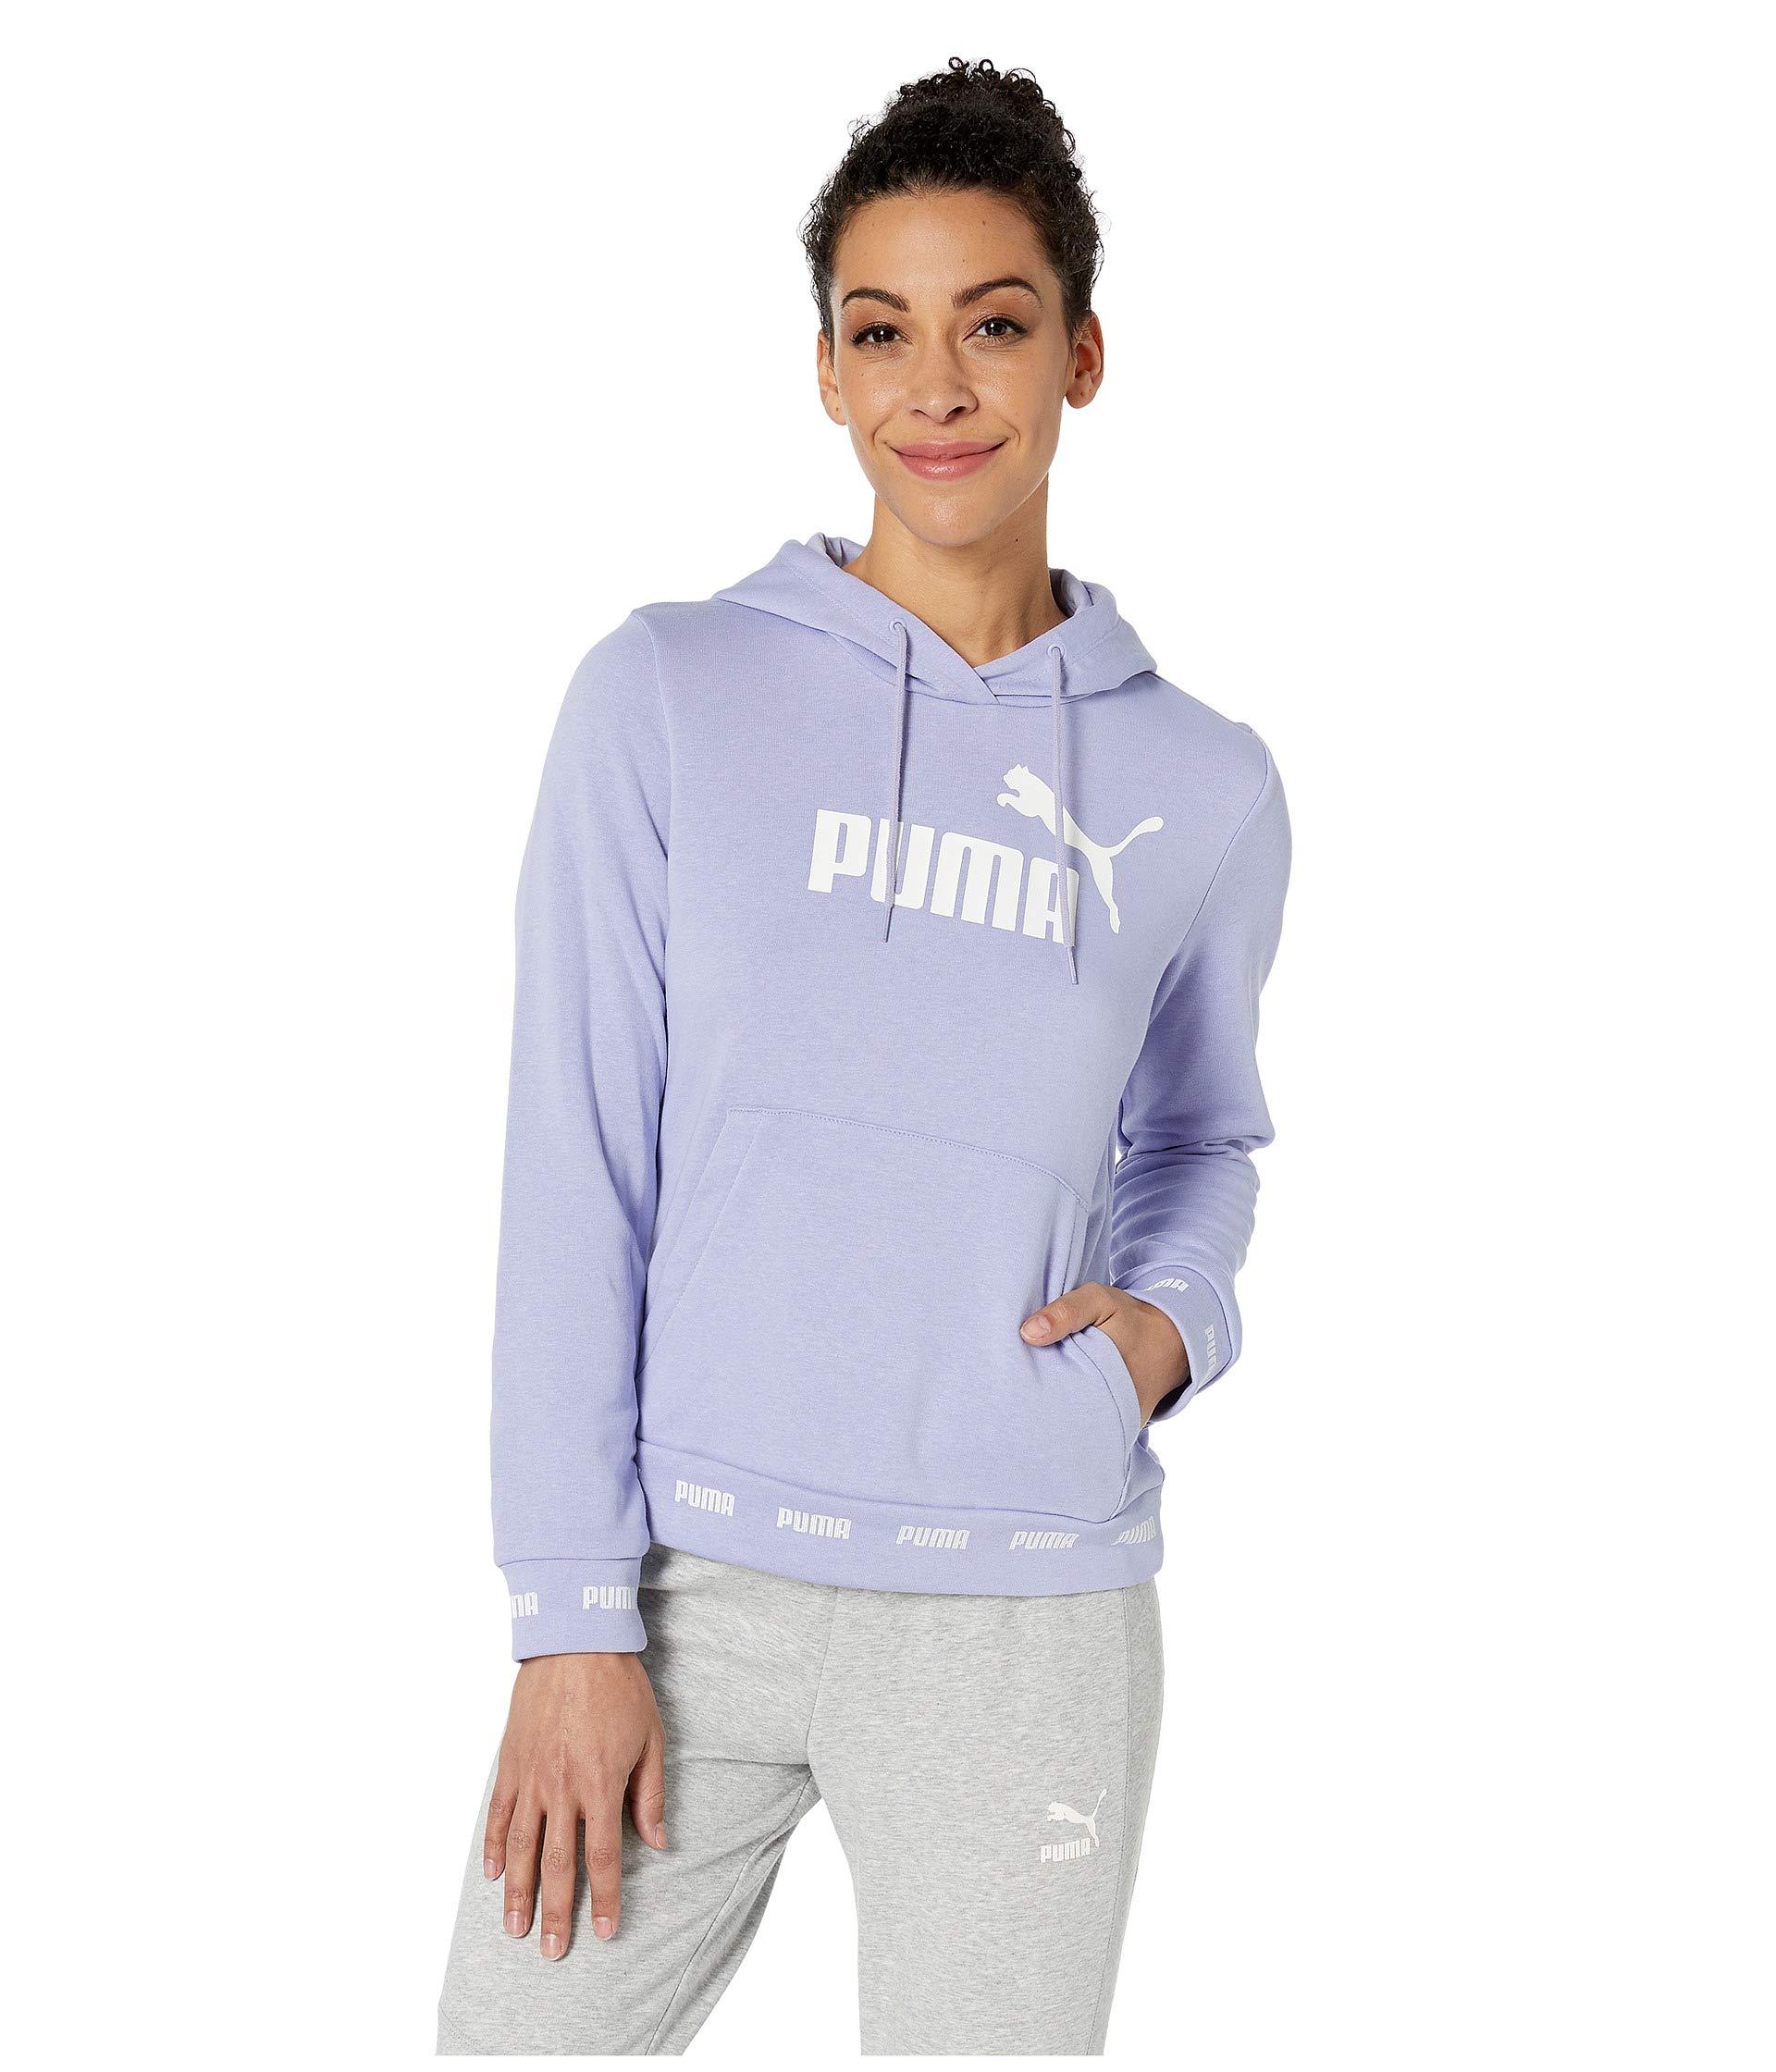 Buy amplified hoodie puma cheap online